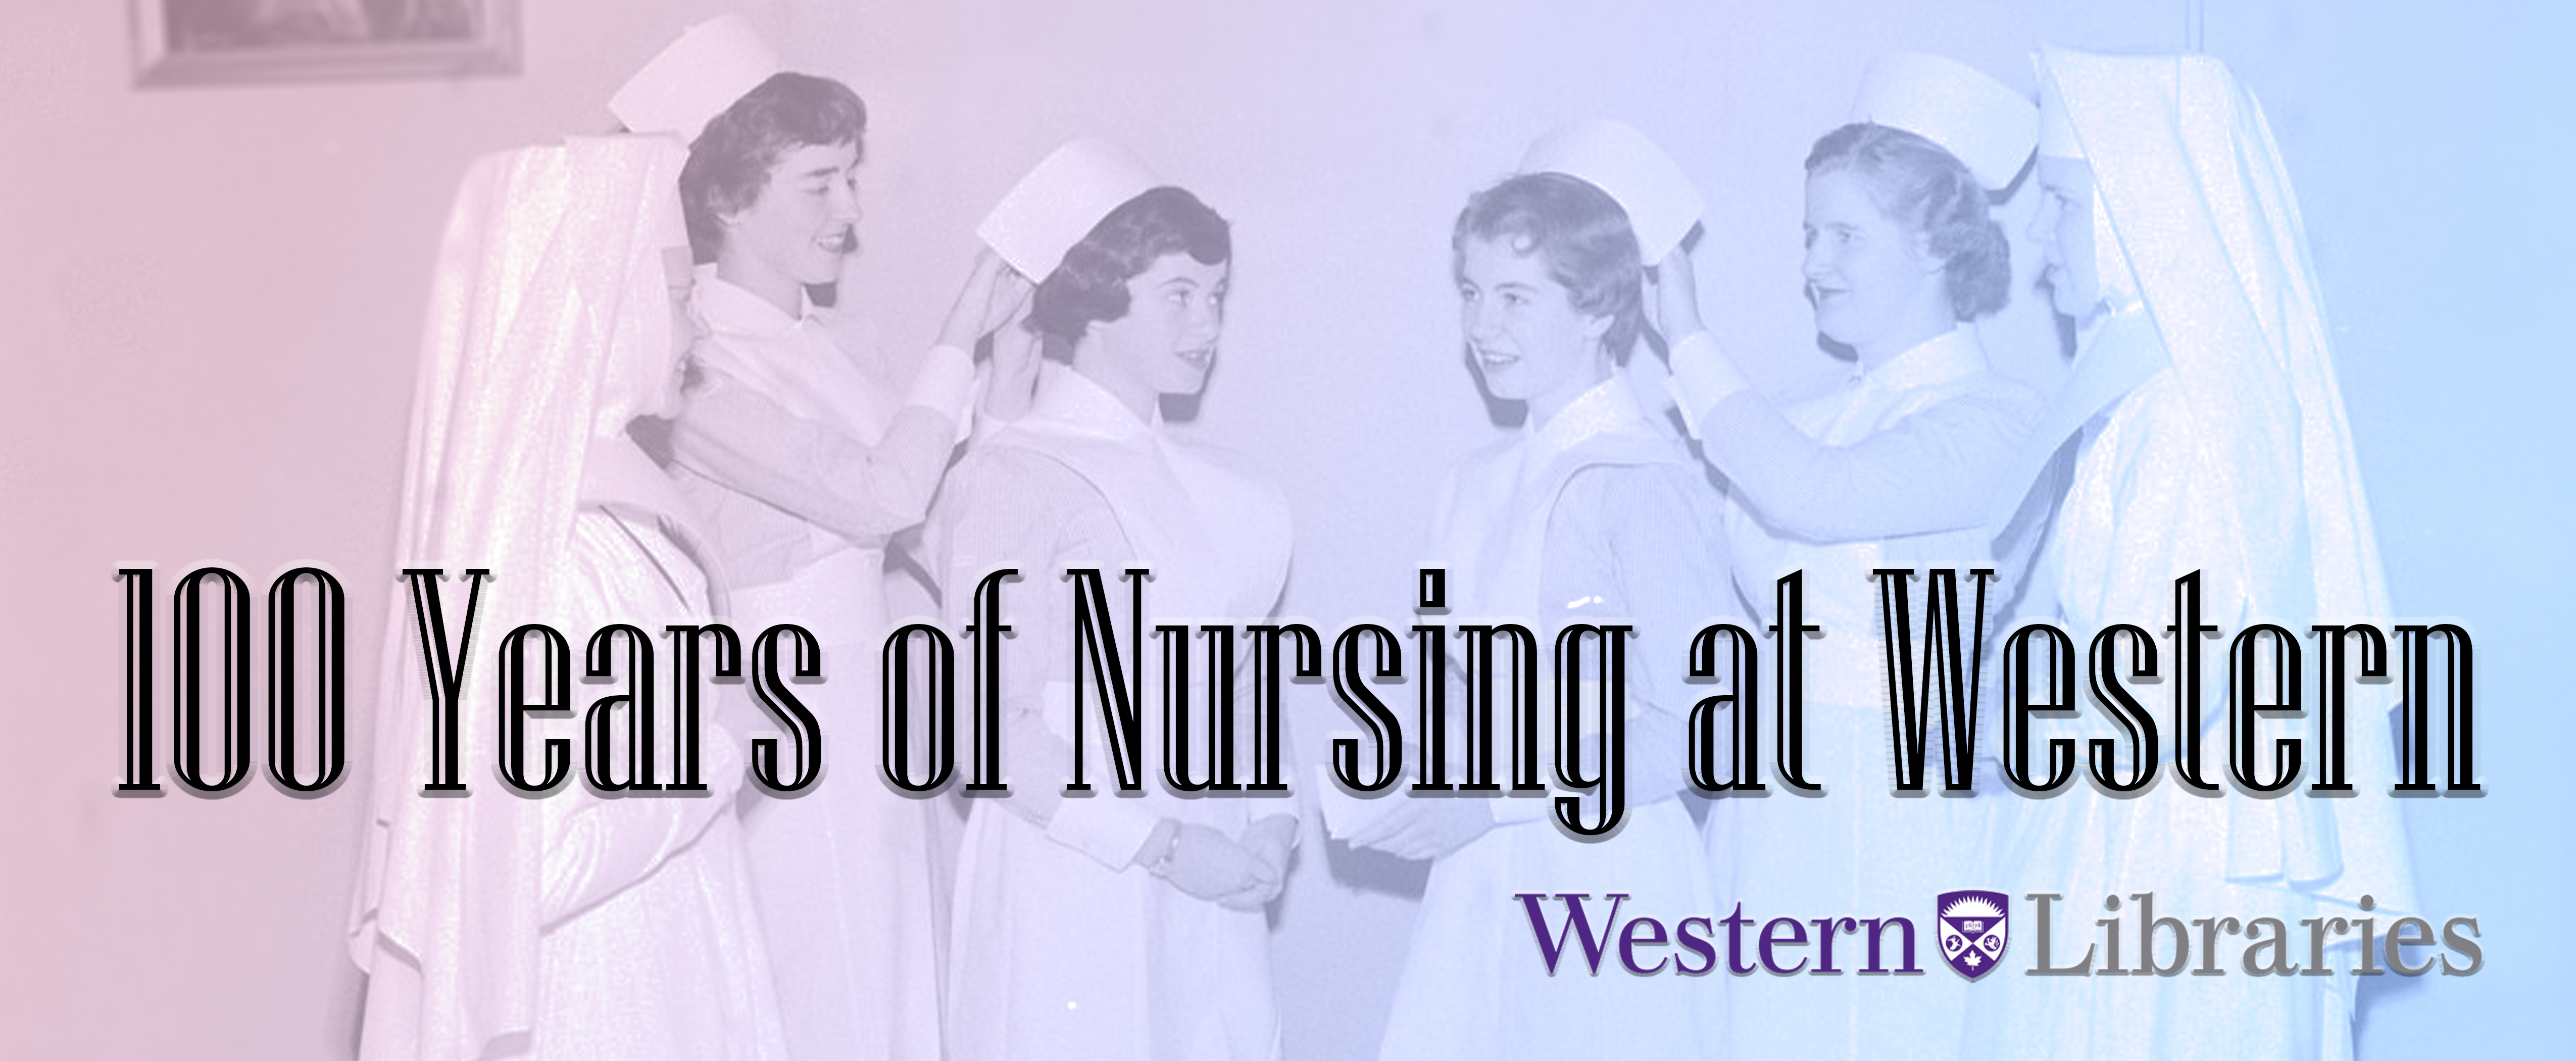 100 Years of Nursing Education at Western